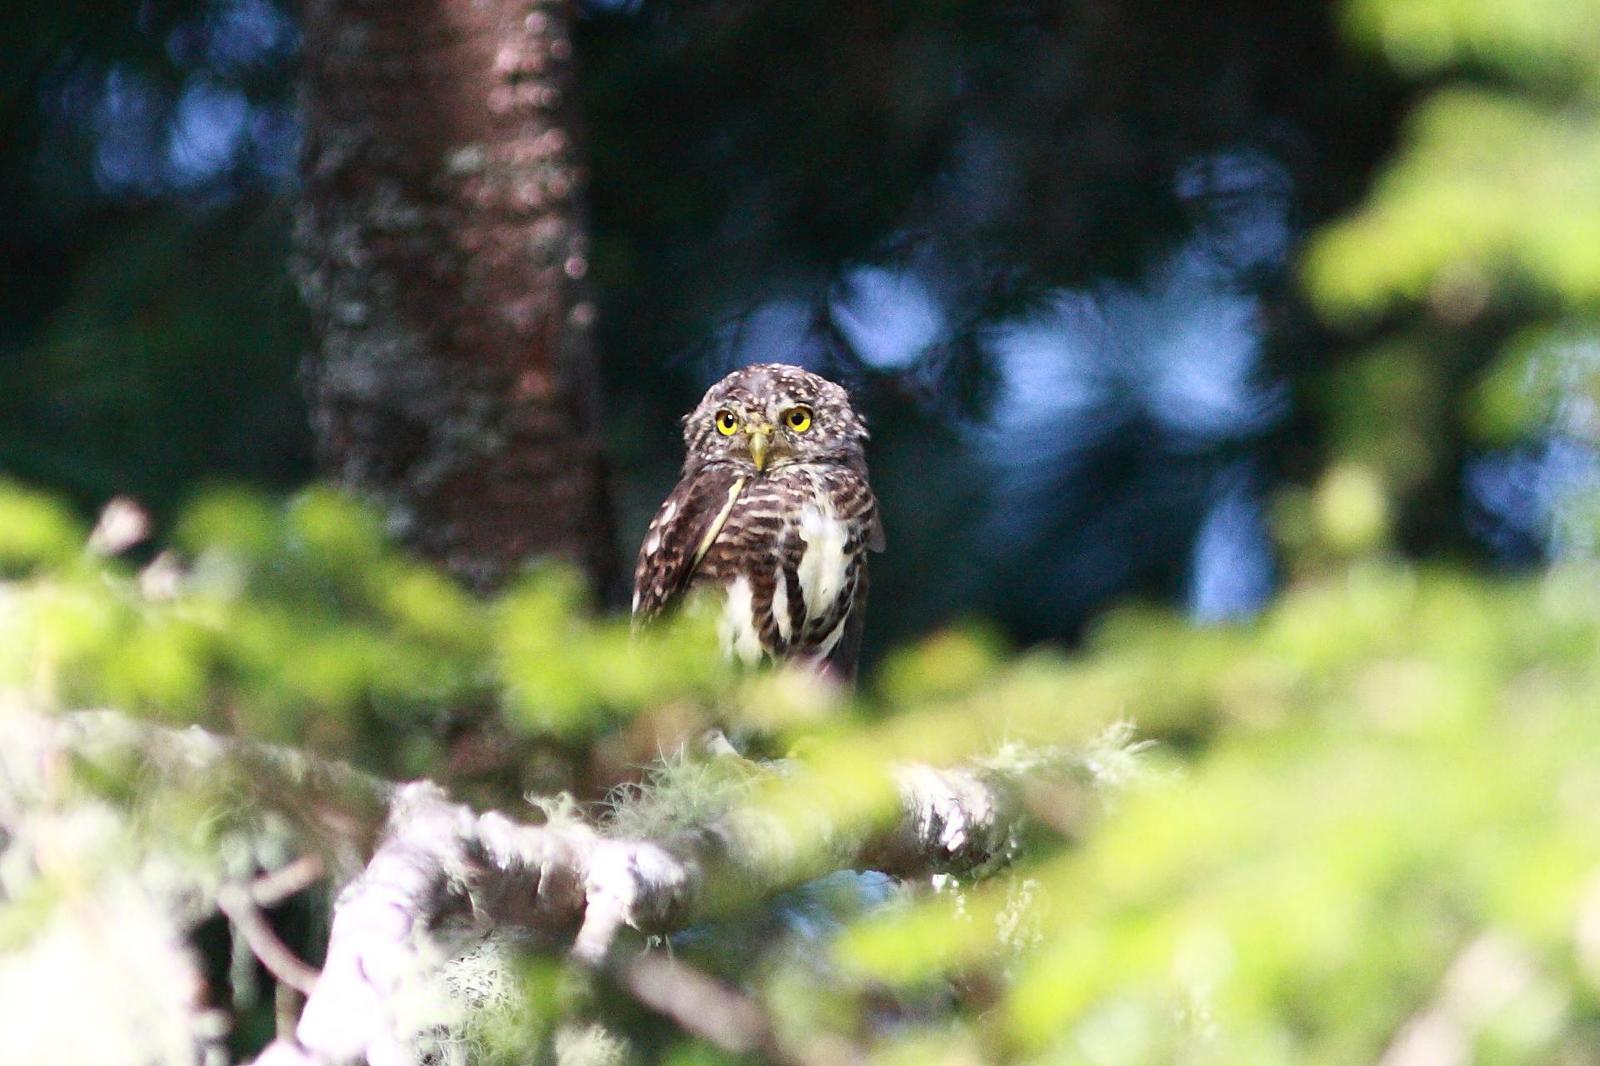 Collared Owlet Photo by Mu-Chi Tsai